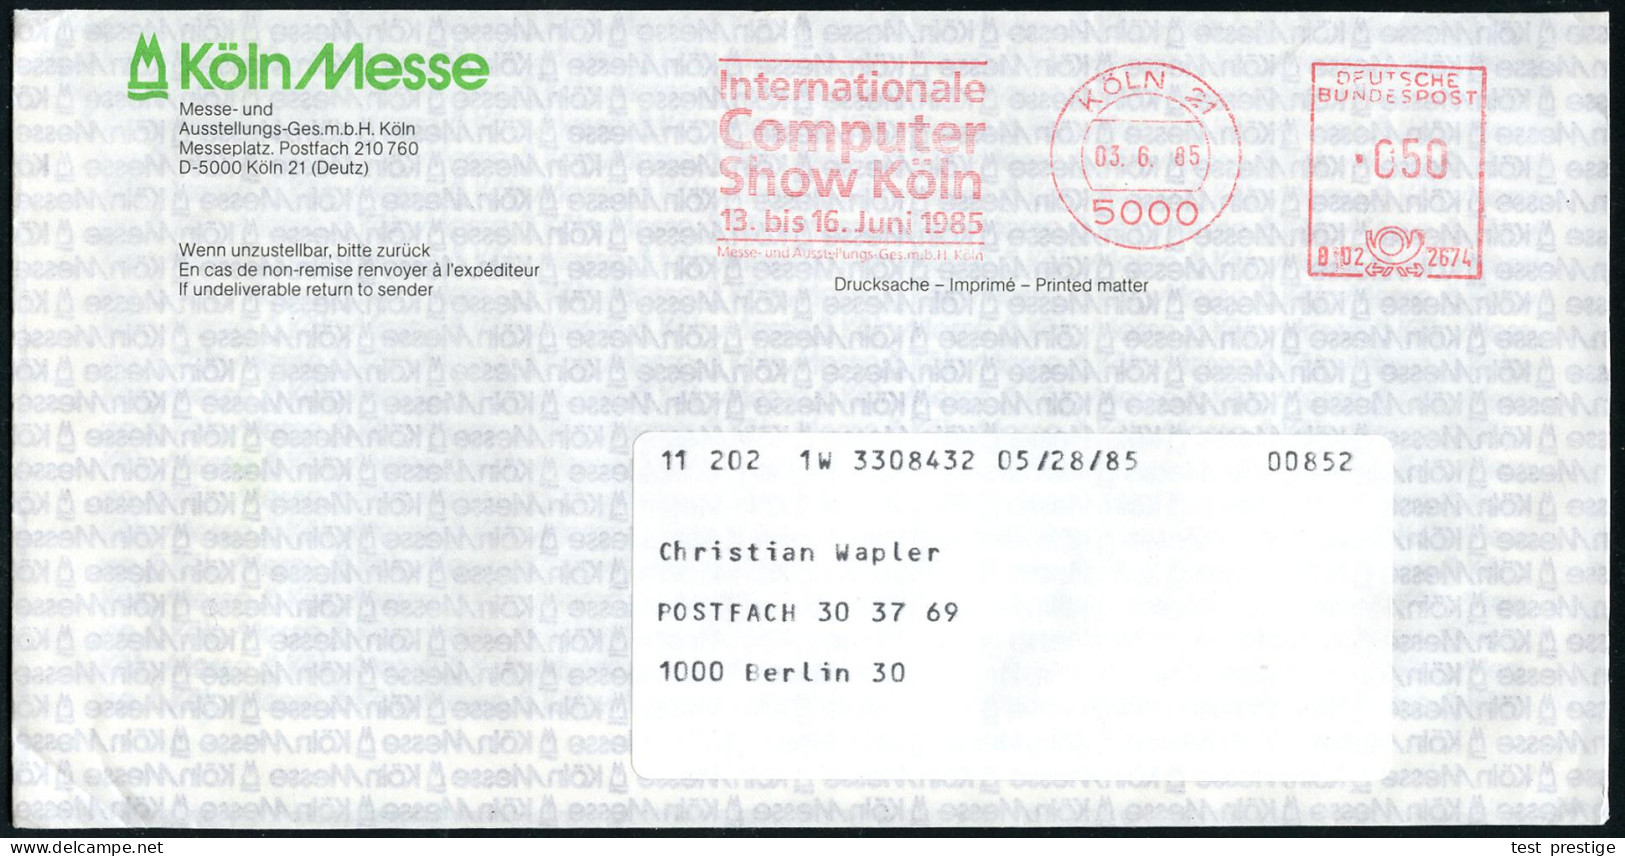 5000 KÖLN 21/ Internationale/ Computer/ Show../ 13.bis 16.Juni 1985 (3.6.) Seltener AFS Der Messe-GmbH Mit Kennung Auf Z - Informática